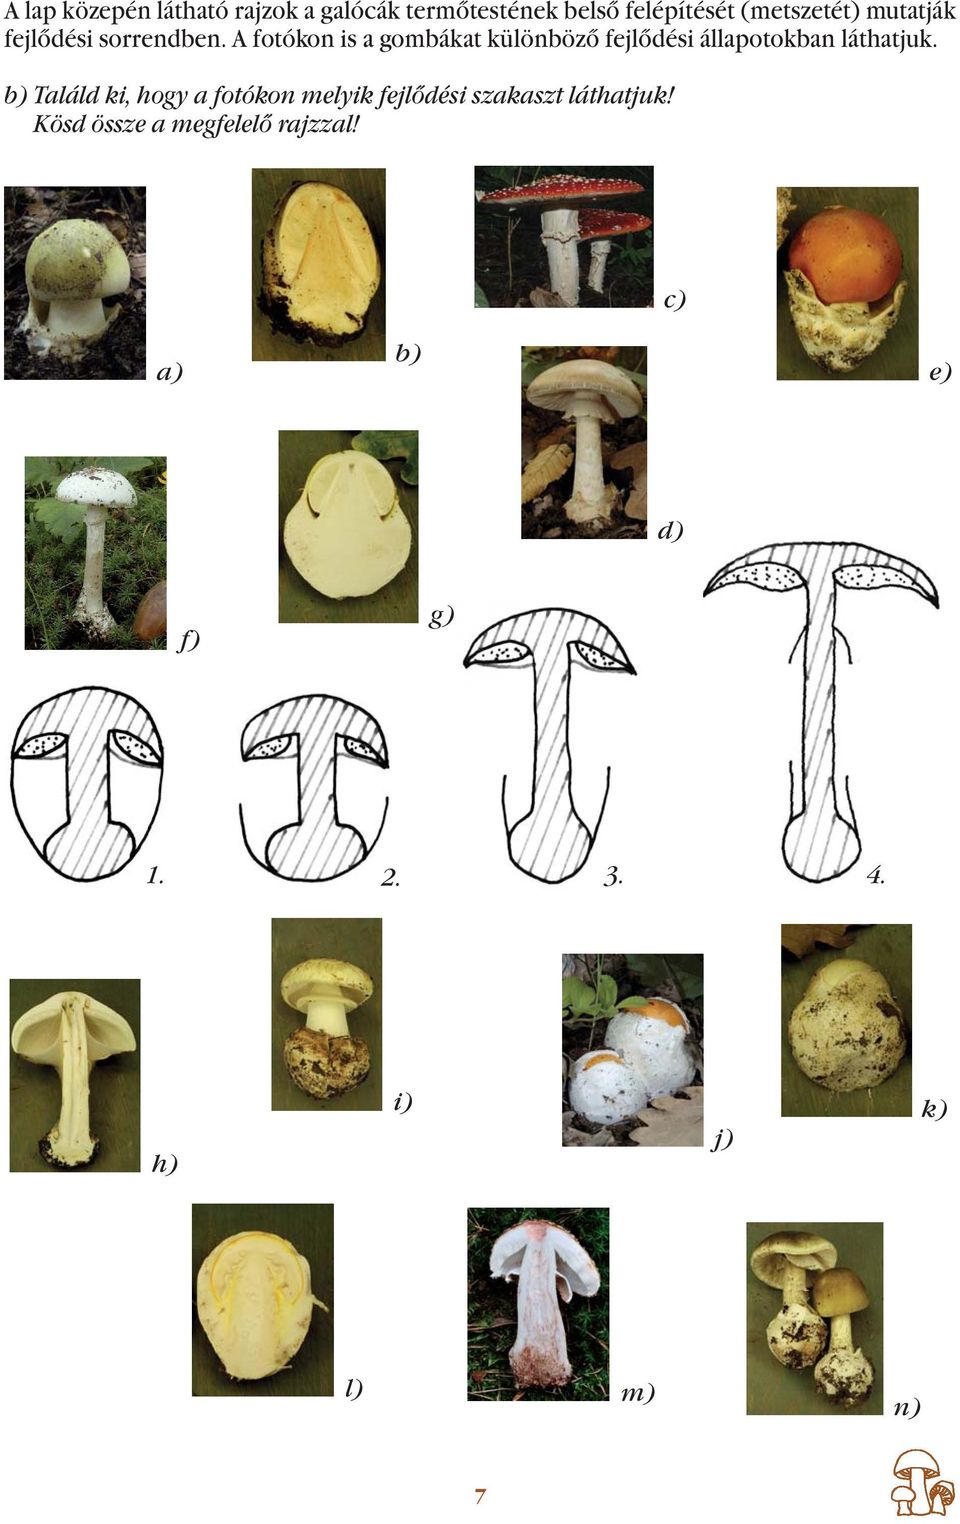 A fotókon is a gombákat különböző fejlődési állapotokban láthatjuk.